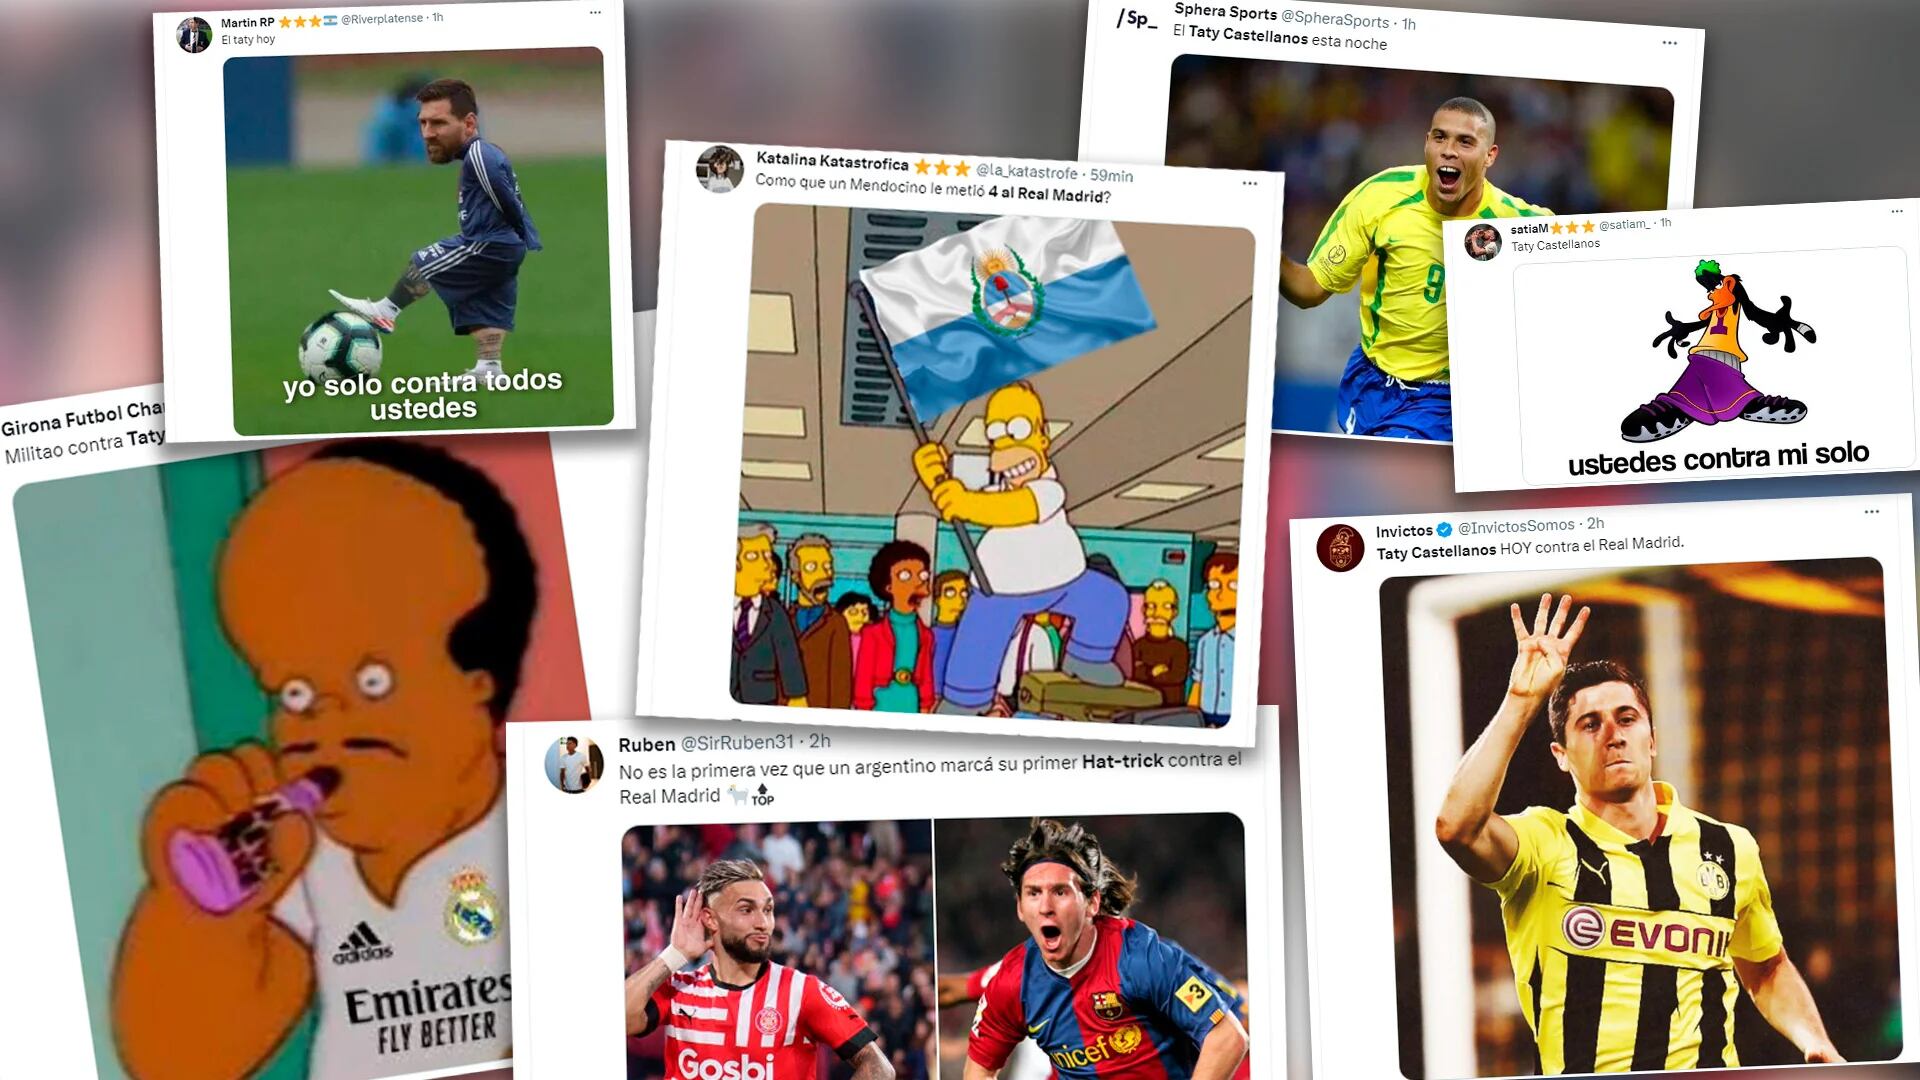 Los mejores memes por el histórico partido de Taty Castellanos ante el Real Madrid: la comparación con Ronaldo y el recuerdo de Messi